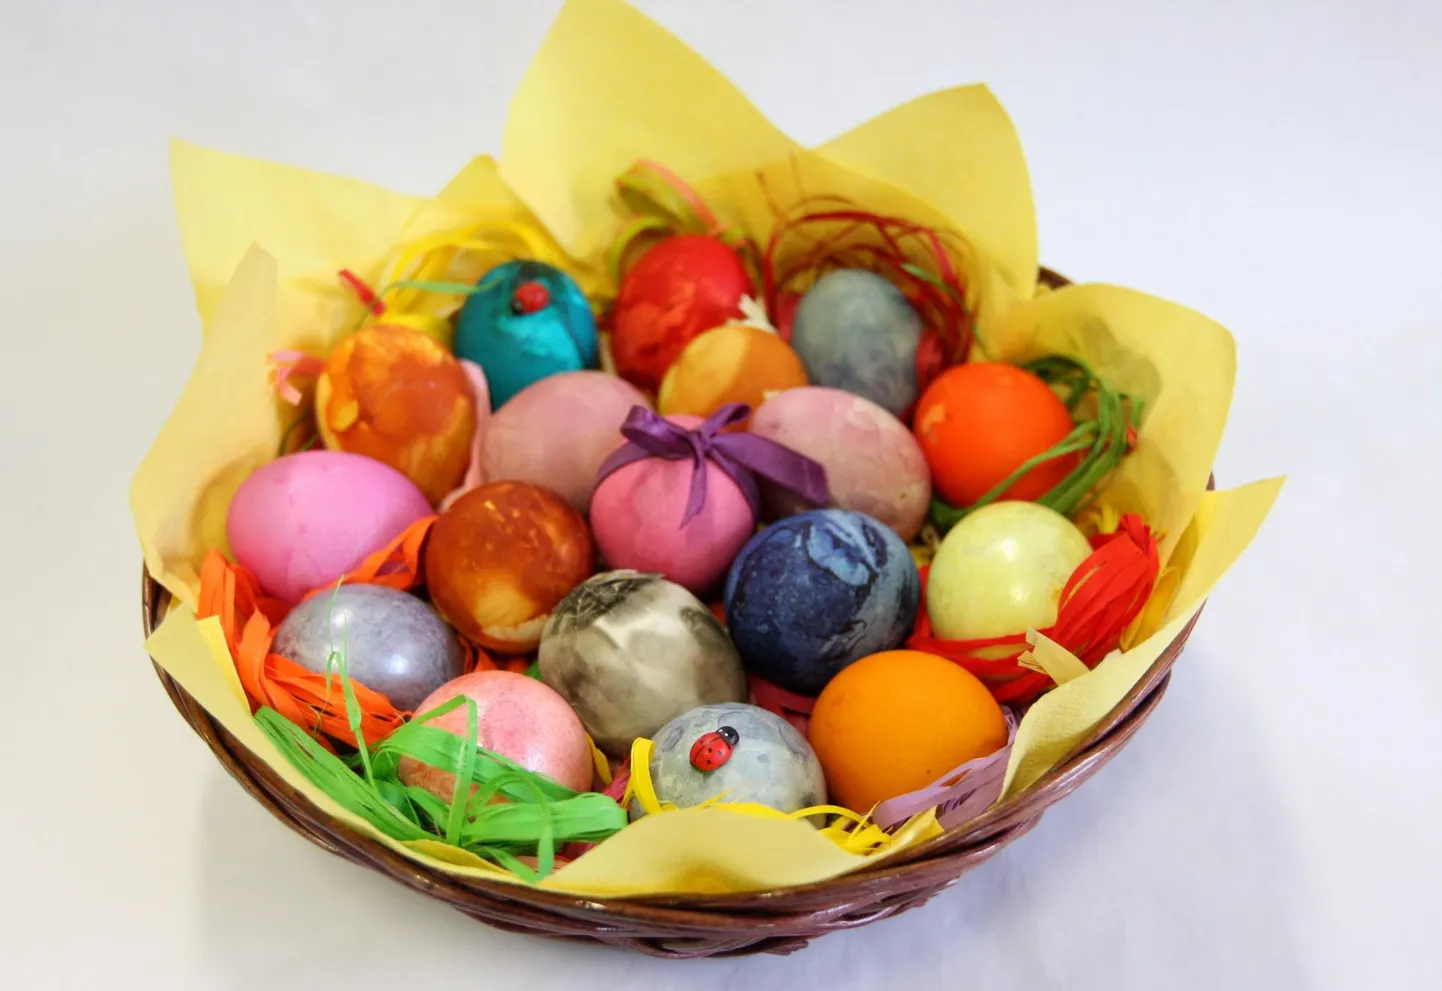 Lihavõttepühade ajal on komme värvida mune, neid üksteisele kinkida ja koksida.